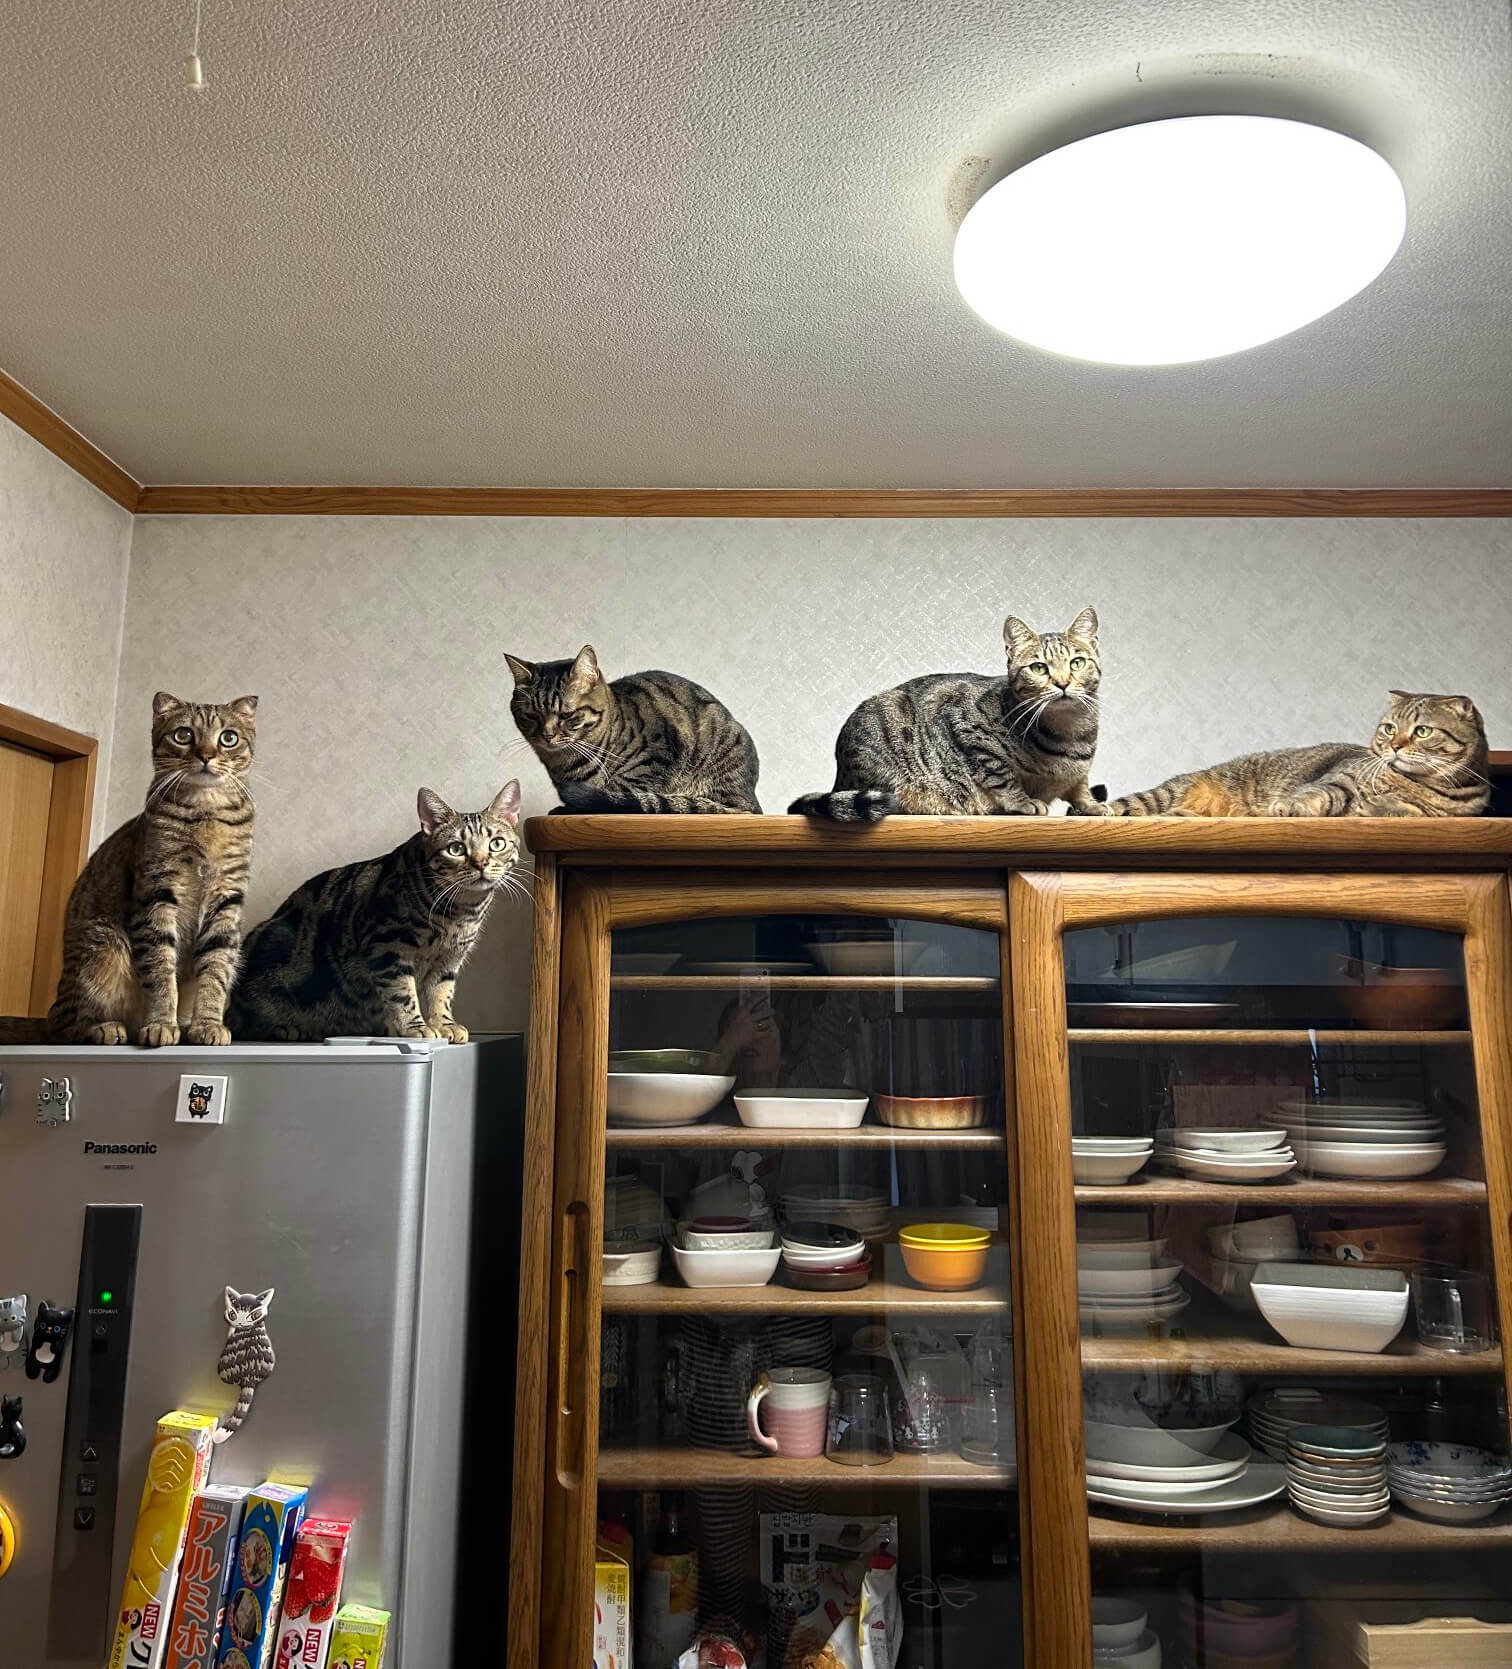 食器棚と冷蔵庫の上の高所で会議をする猫たち